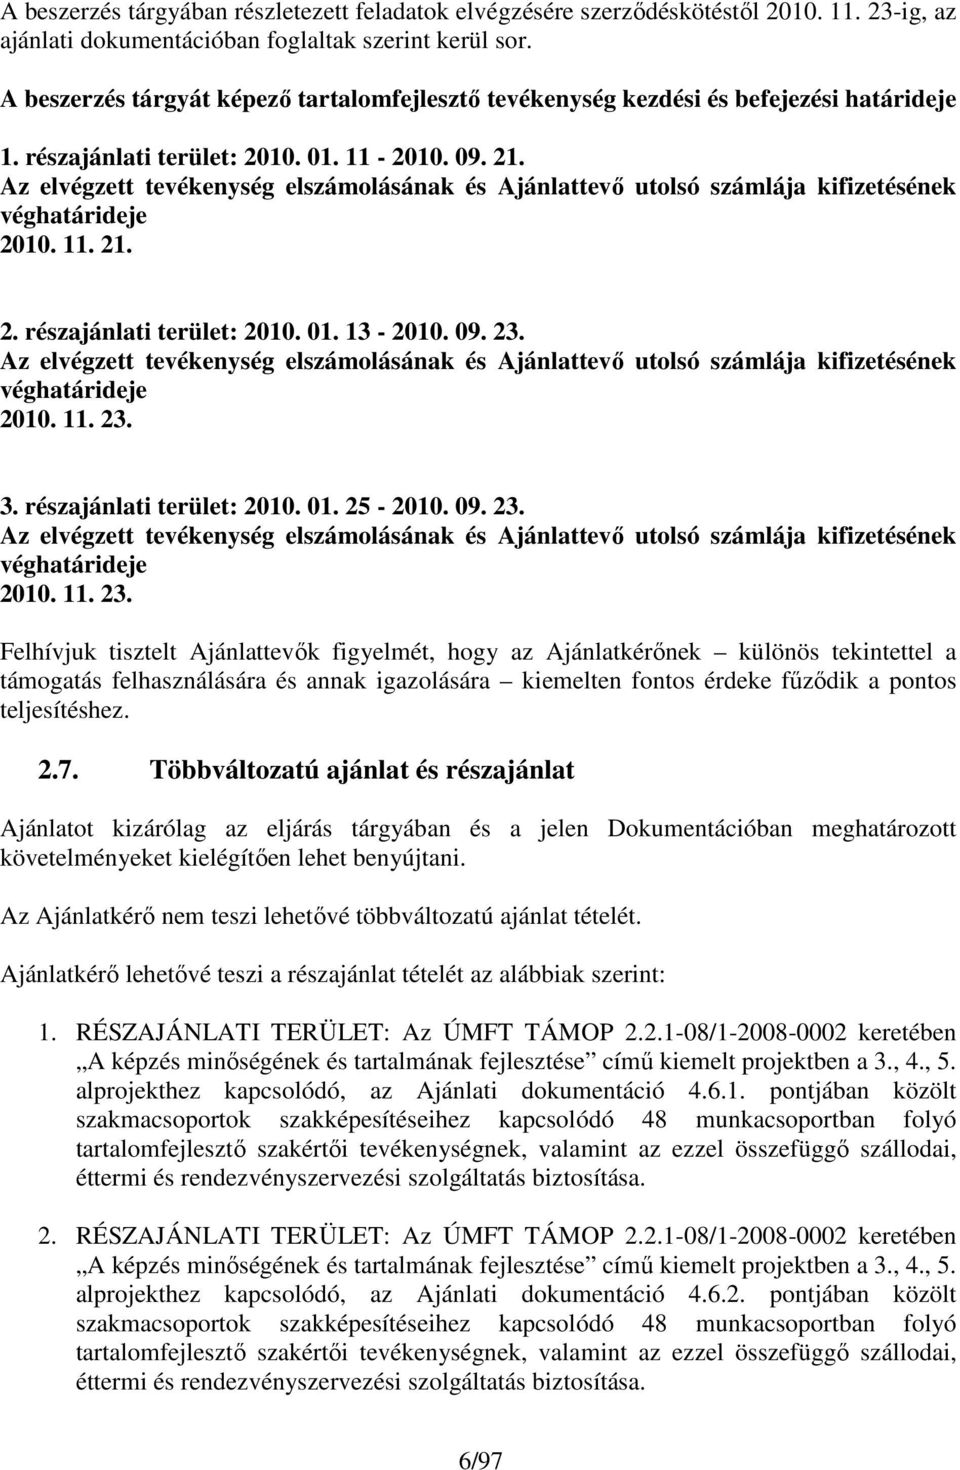 Az elvégzett tevékenység elszámolásának és Ajánlattevı utolsó számlája kifizetésének véghatárideje 2010. 11. 21. 2. részajánlati terület: 2010. 01. 13-2010. 09. 23.